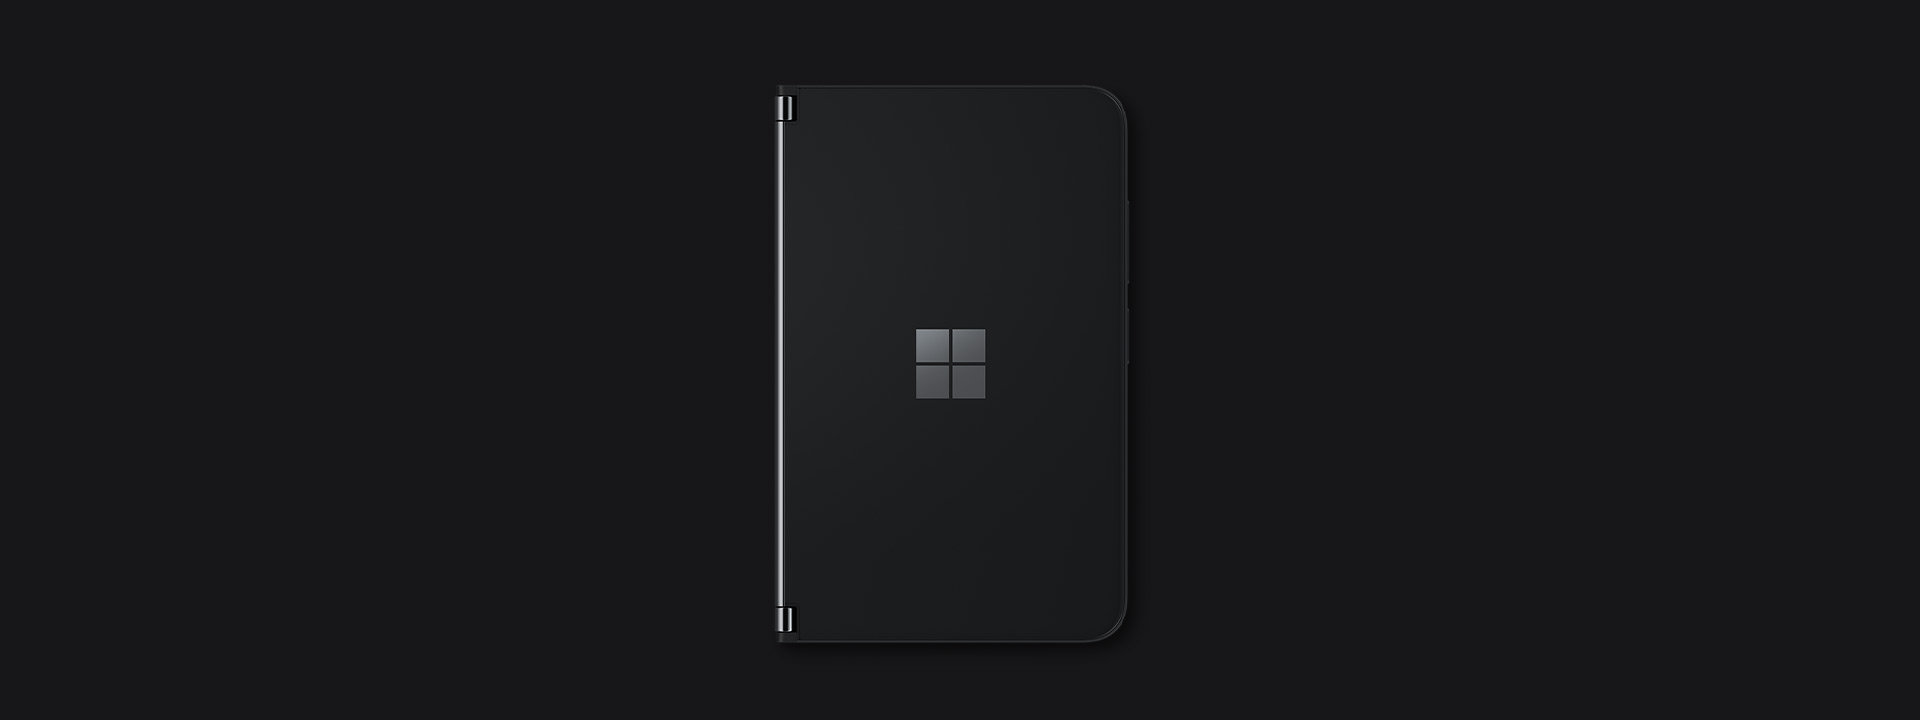 閉じた状態の Surface Duo 2。